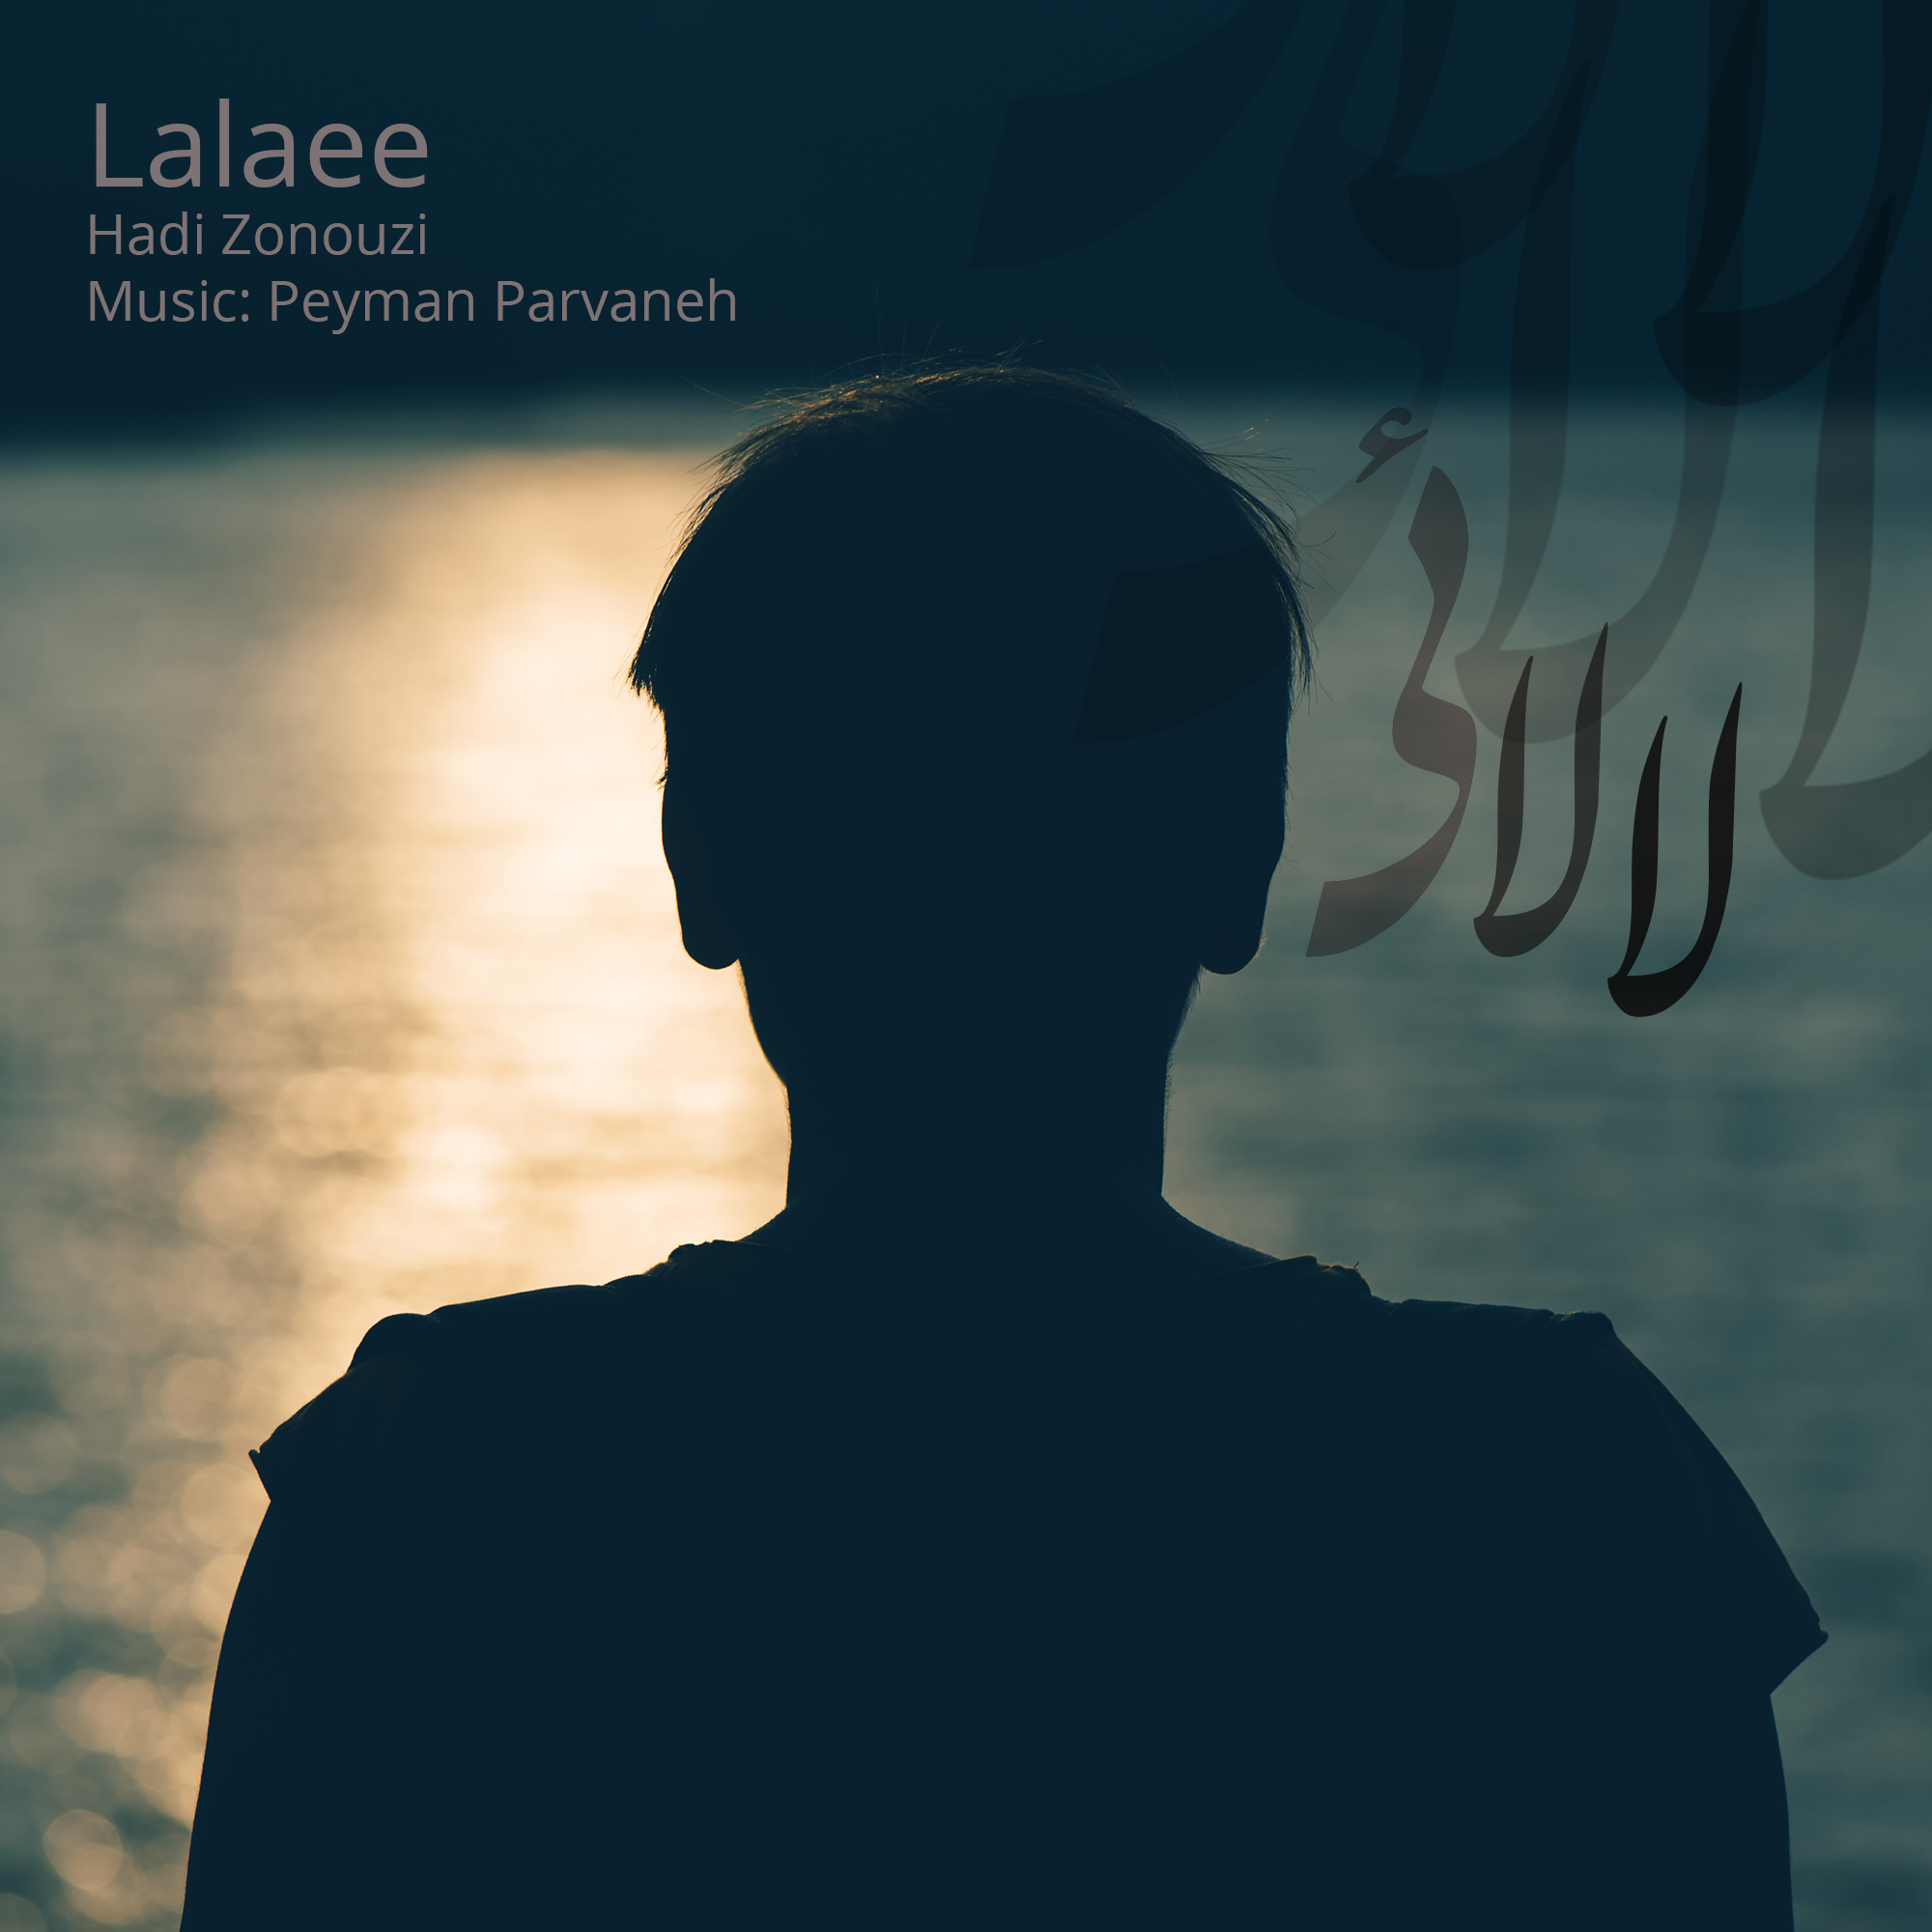  دانلود آهنگ جدید هادی زنوزی - لالایی | Download New Music By Hadi Zonouzi - Lalaee